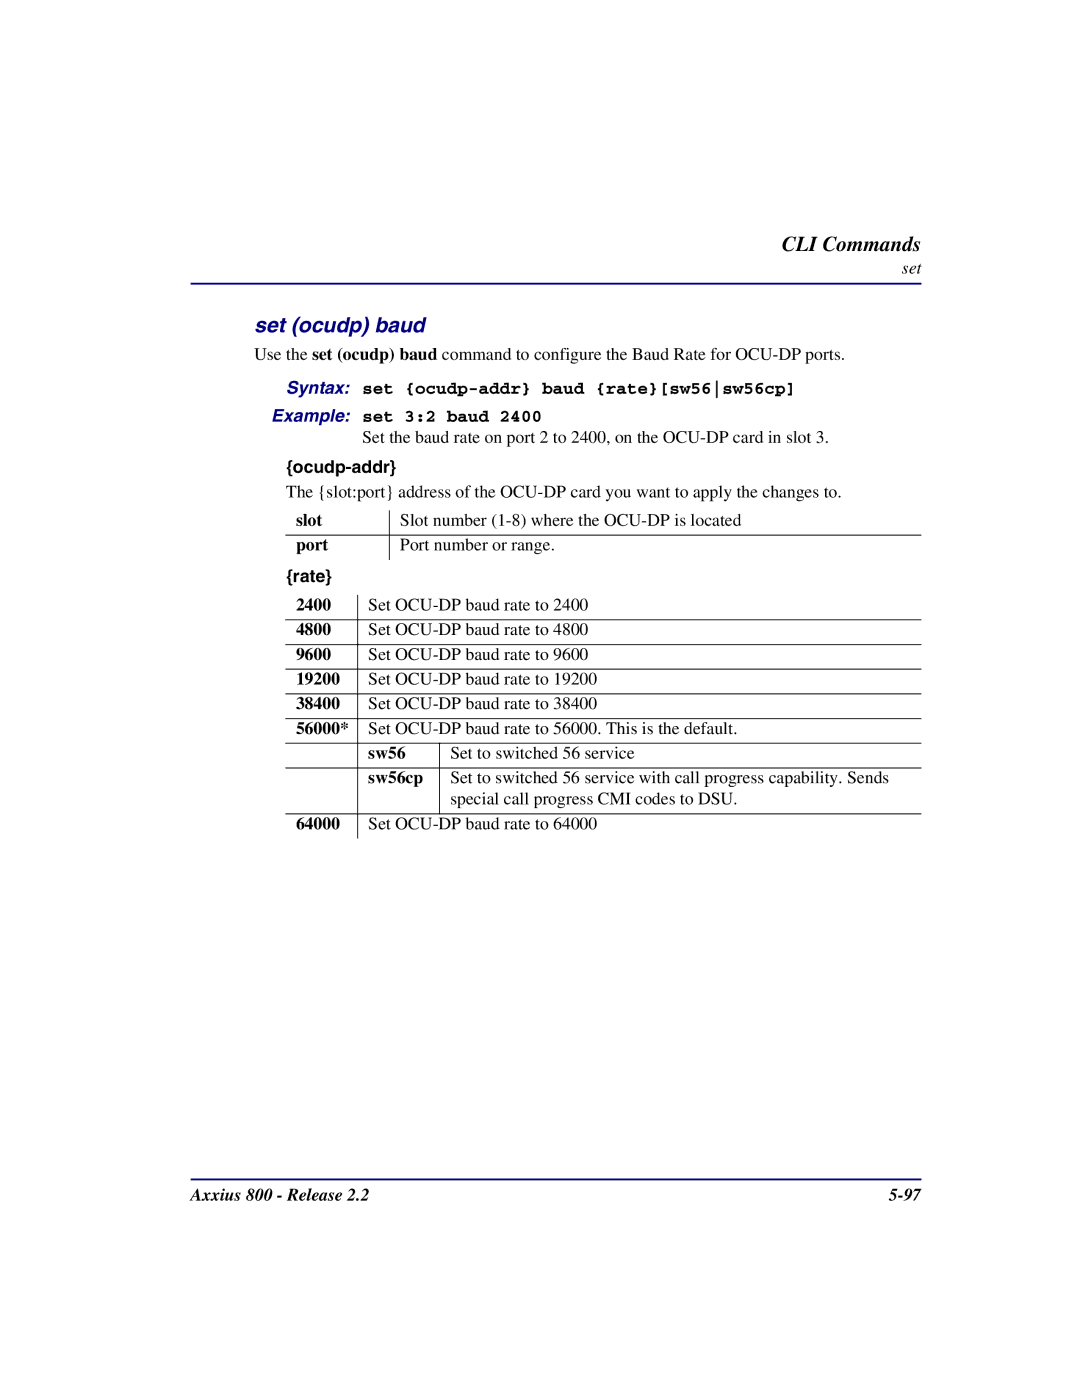 Carrier Access Axxius 800 user manual Set ocudp baud, Rate 